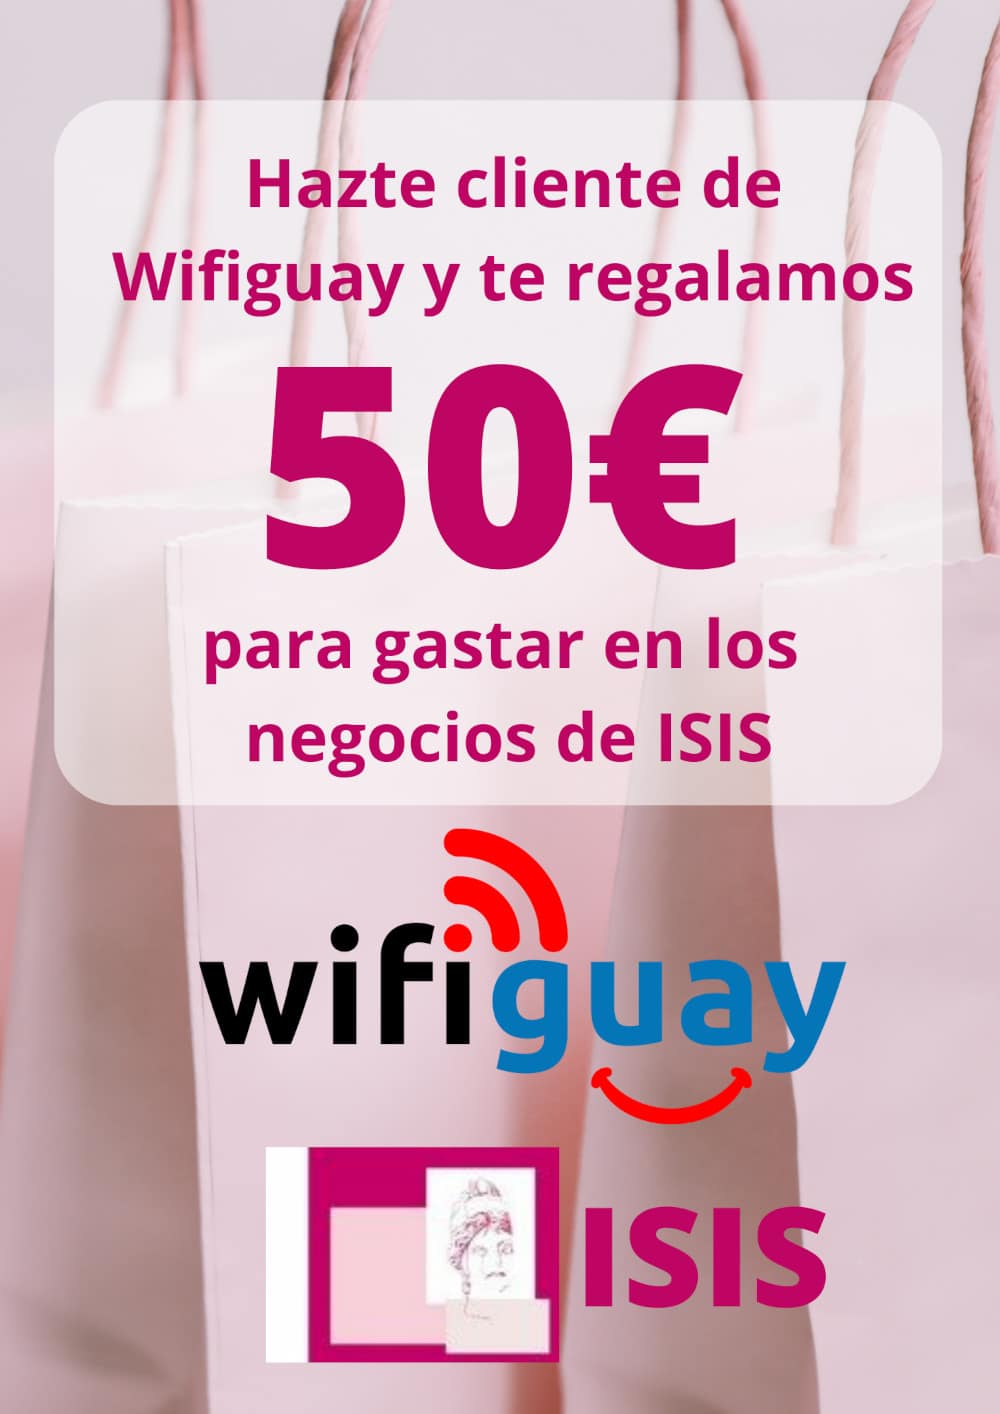 Hazte cliente de Wifiguay y te regalamos 50 euros para gastar en los negocios Isis